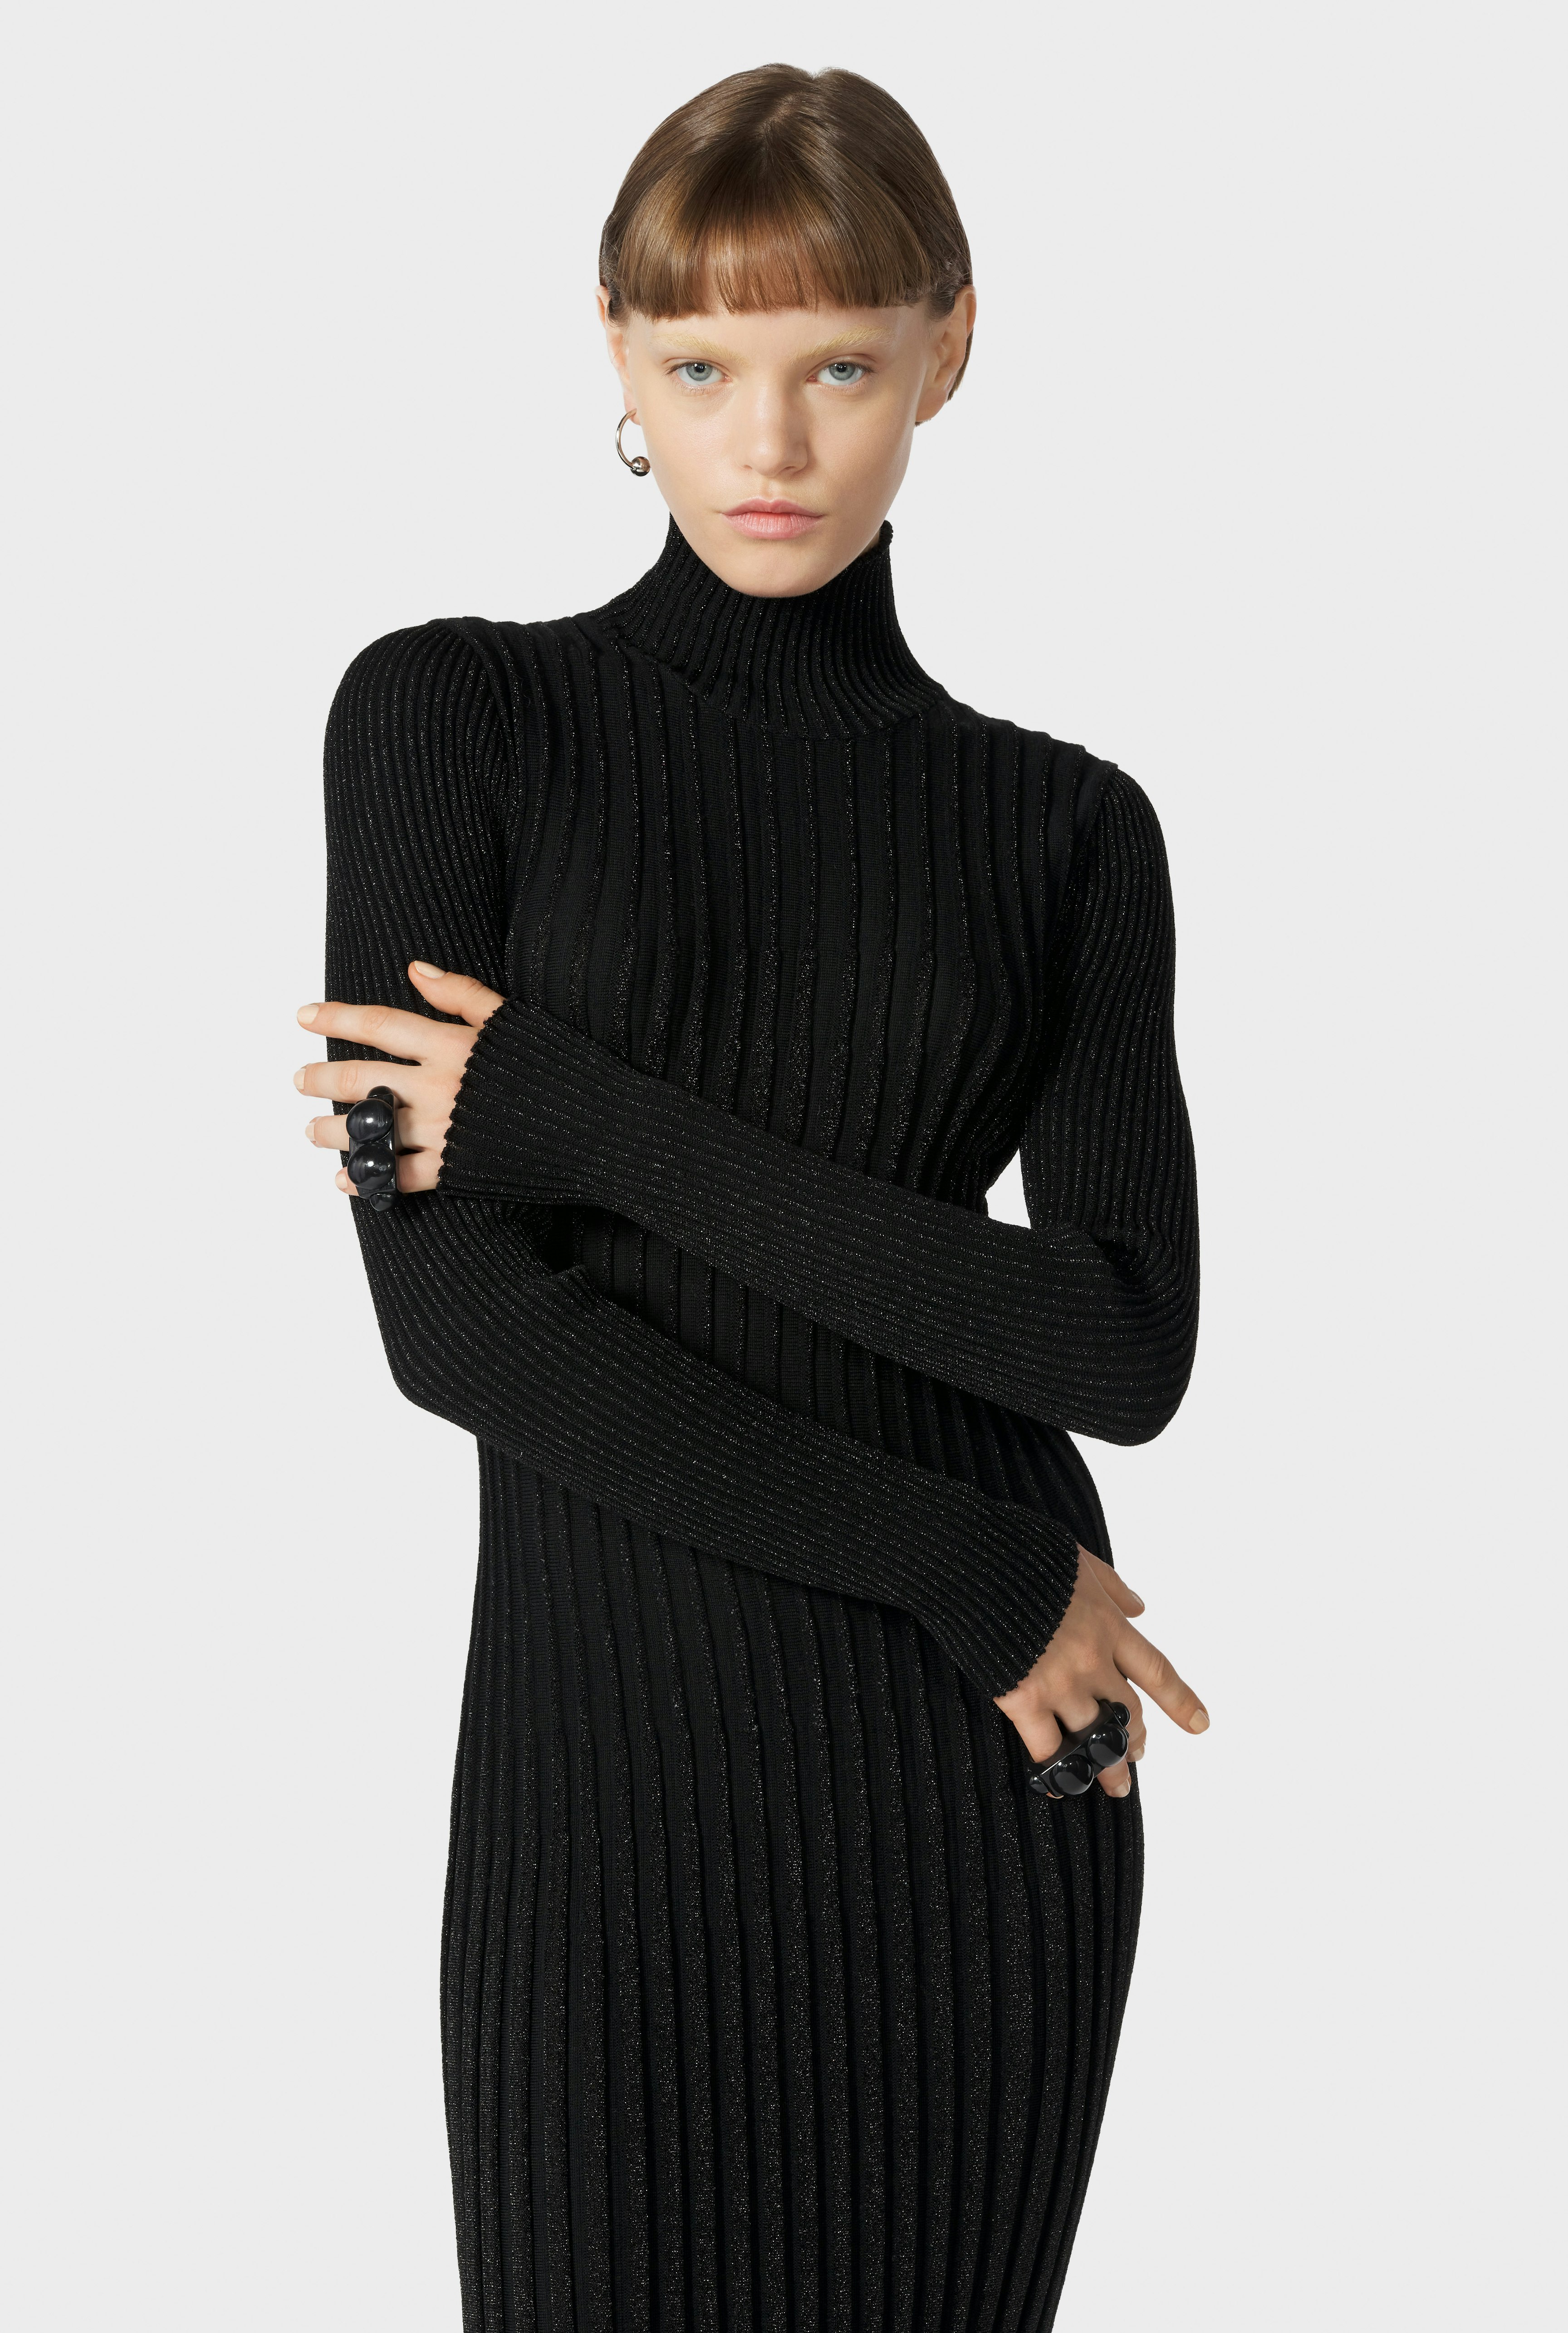 The Black Cyber Knit Dress Jean Paul Gaultier